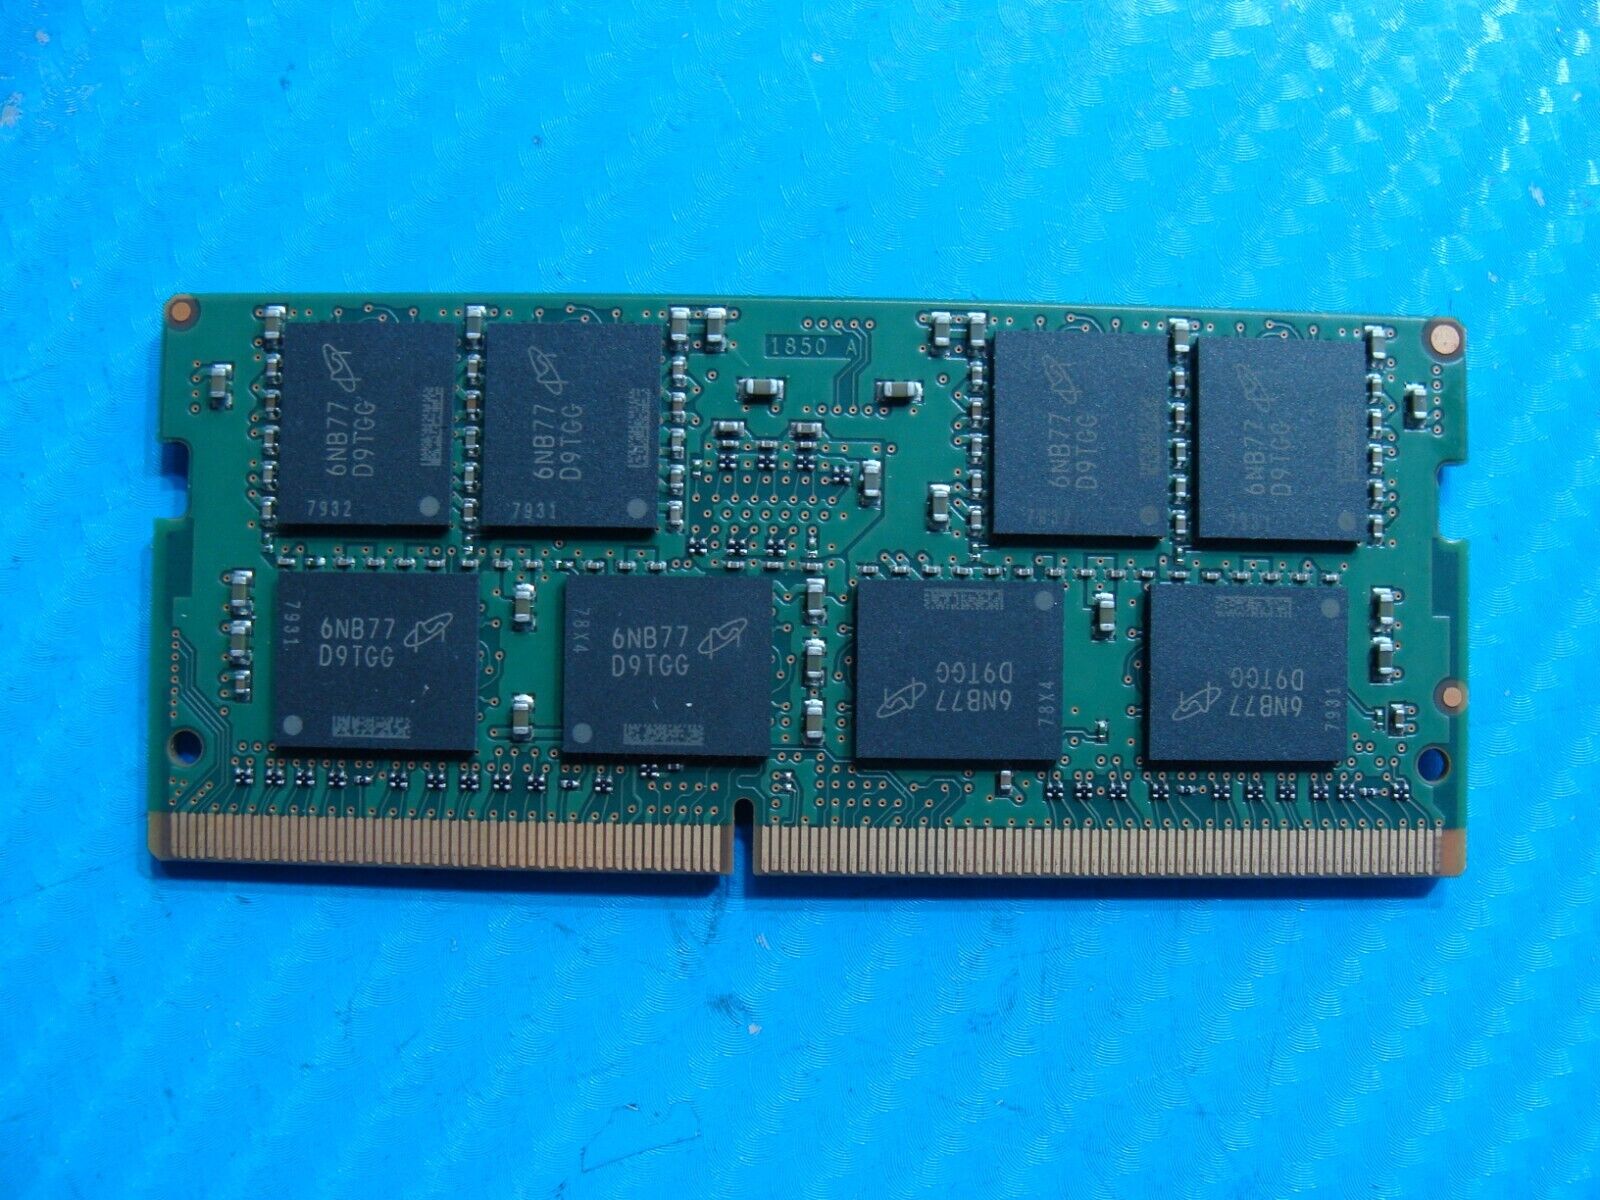 Dell E7470 So-Dimm Micron 8Gb 2Rx8 Memory Ram PC4-2133P MTA16ATF1G64HZ-2G1B1